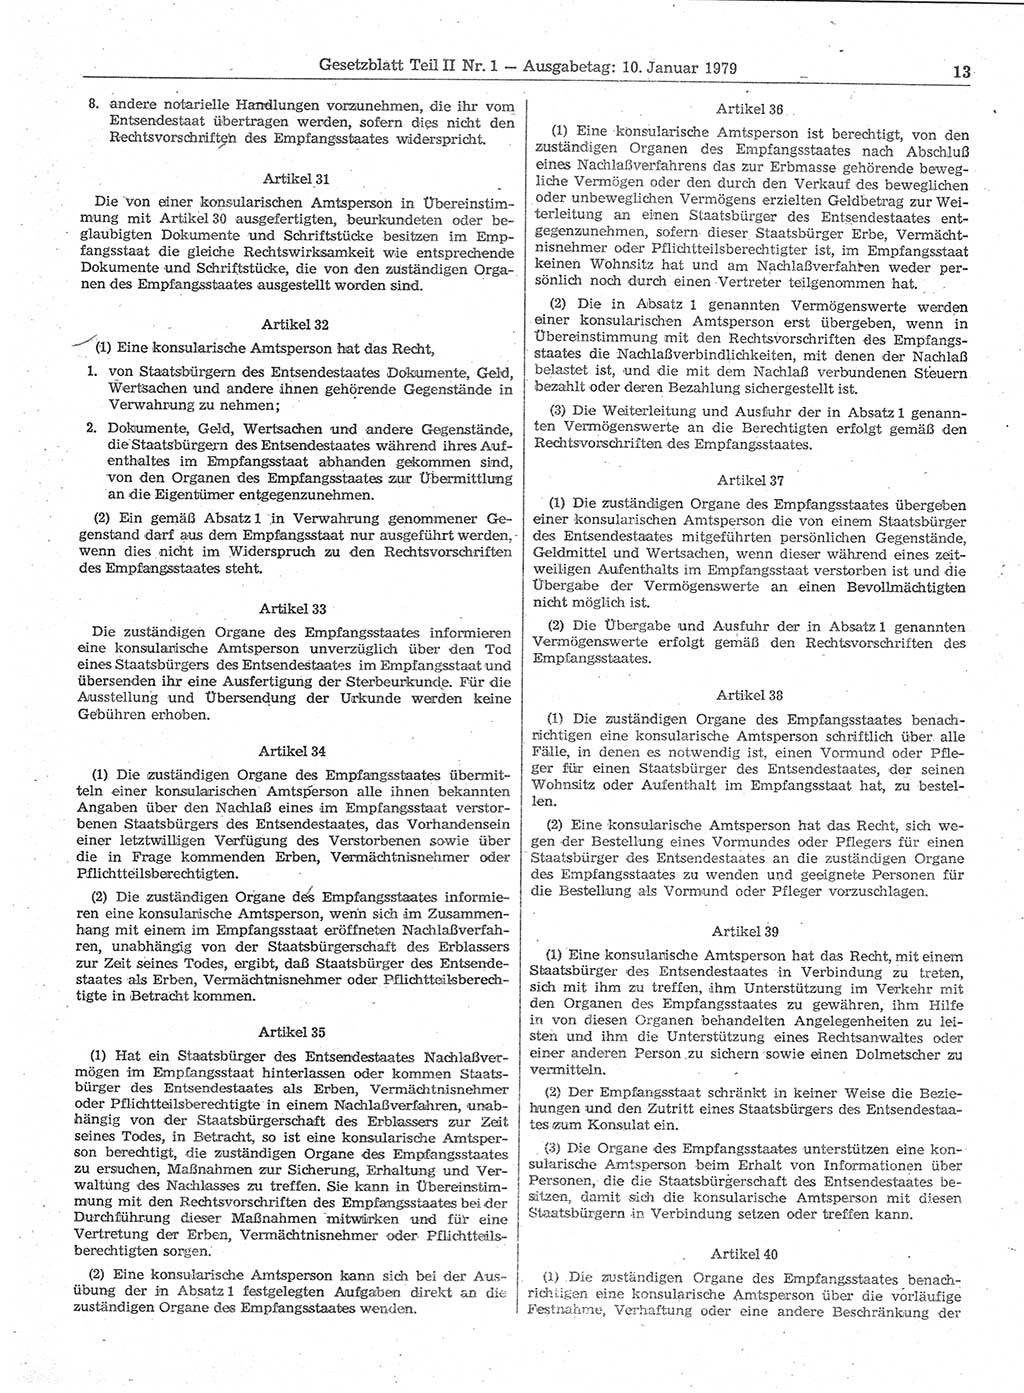 Gesetzblatt (GBl.) der Deutschen Demokratischen Republik (DDR) Teil ⅠⅠ 1979, Seite 13 (GBl. DDR ⅠⅠ 1979, S. 13)